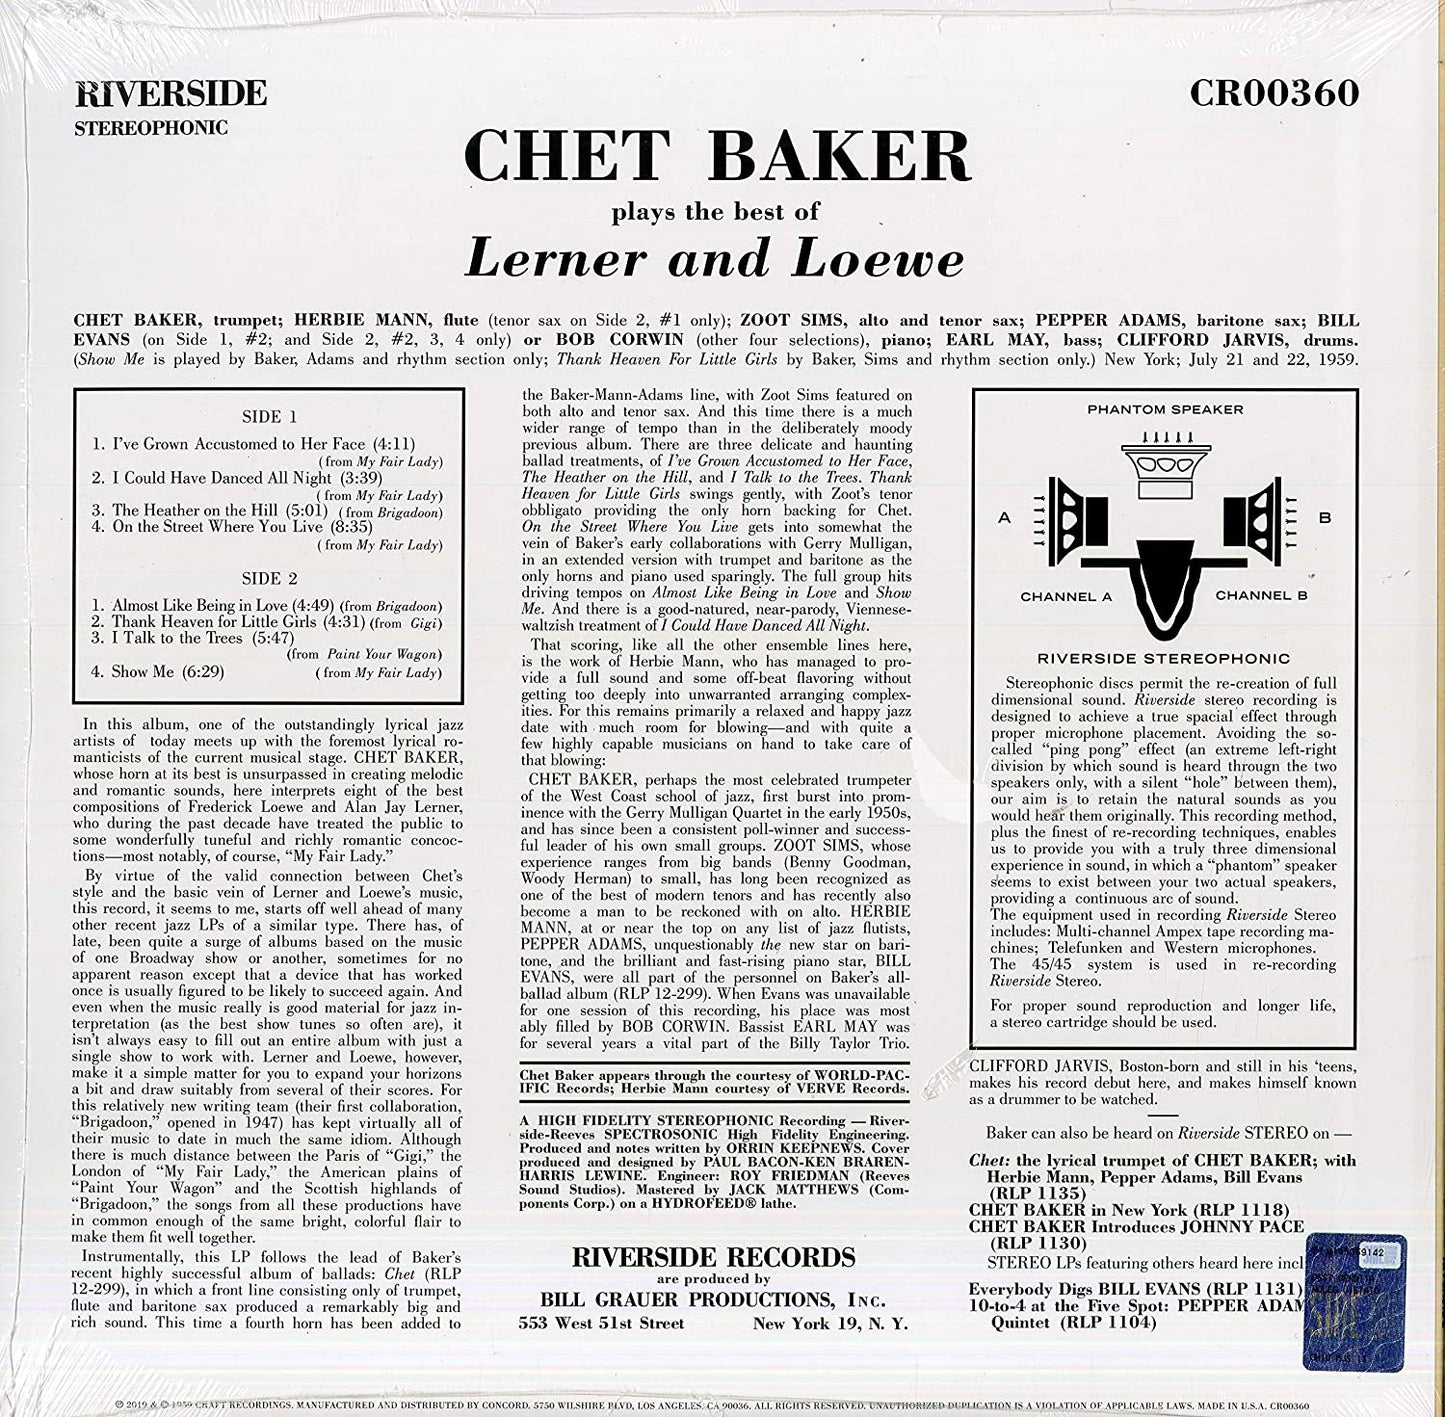 Baker, Chet/Plays the Best of Lerner & Loewe [LP]